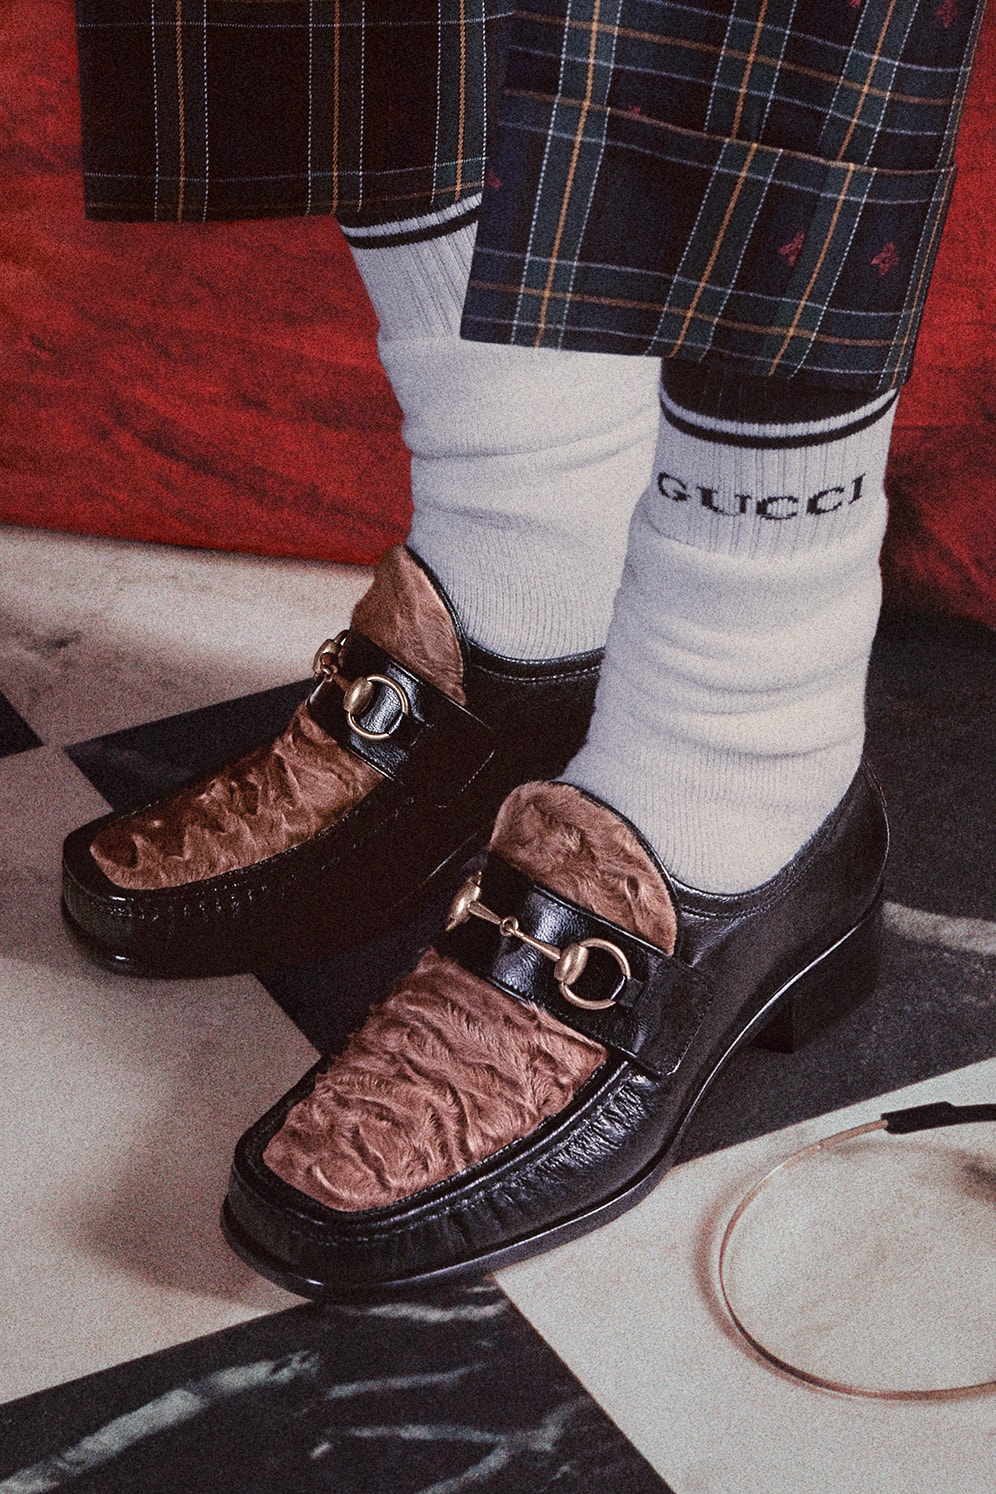 Gucci Mick Rock Roman Rhapsody Cruise 2018 Campaign Alessandro Michele Lookbook